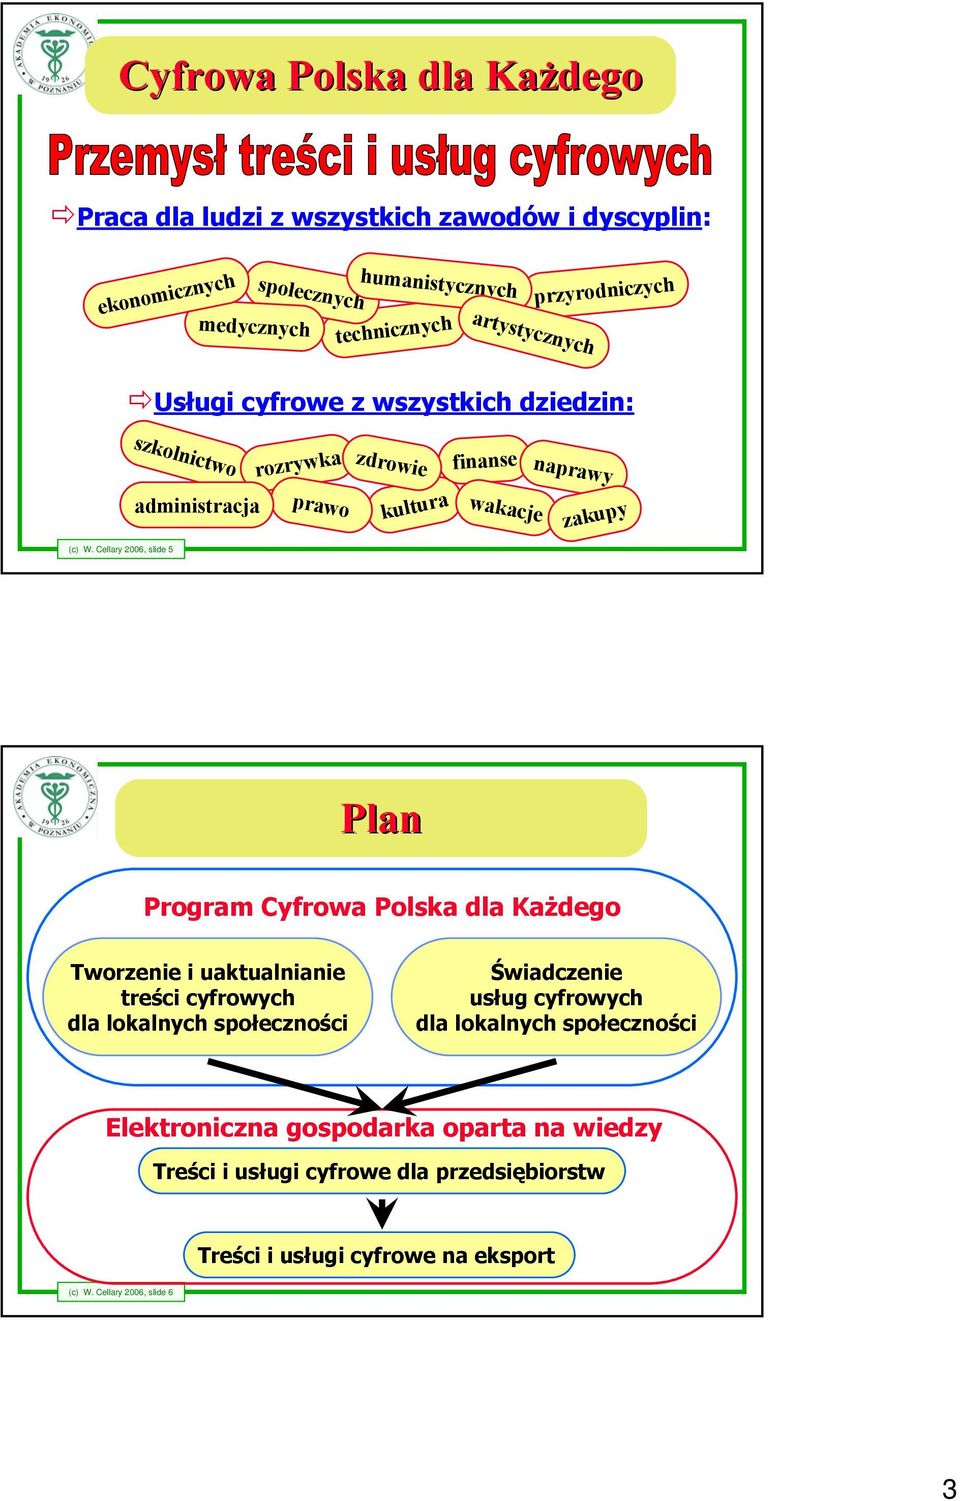 Cellary 2006, slide 5 Plan Program Cyfrowa Polska dla Każdego Tworzenie i uaktualnianie treści cyfrowych dla lokalnych społeczności Świadczenie usług cyfrowych